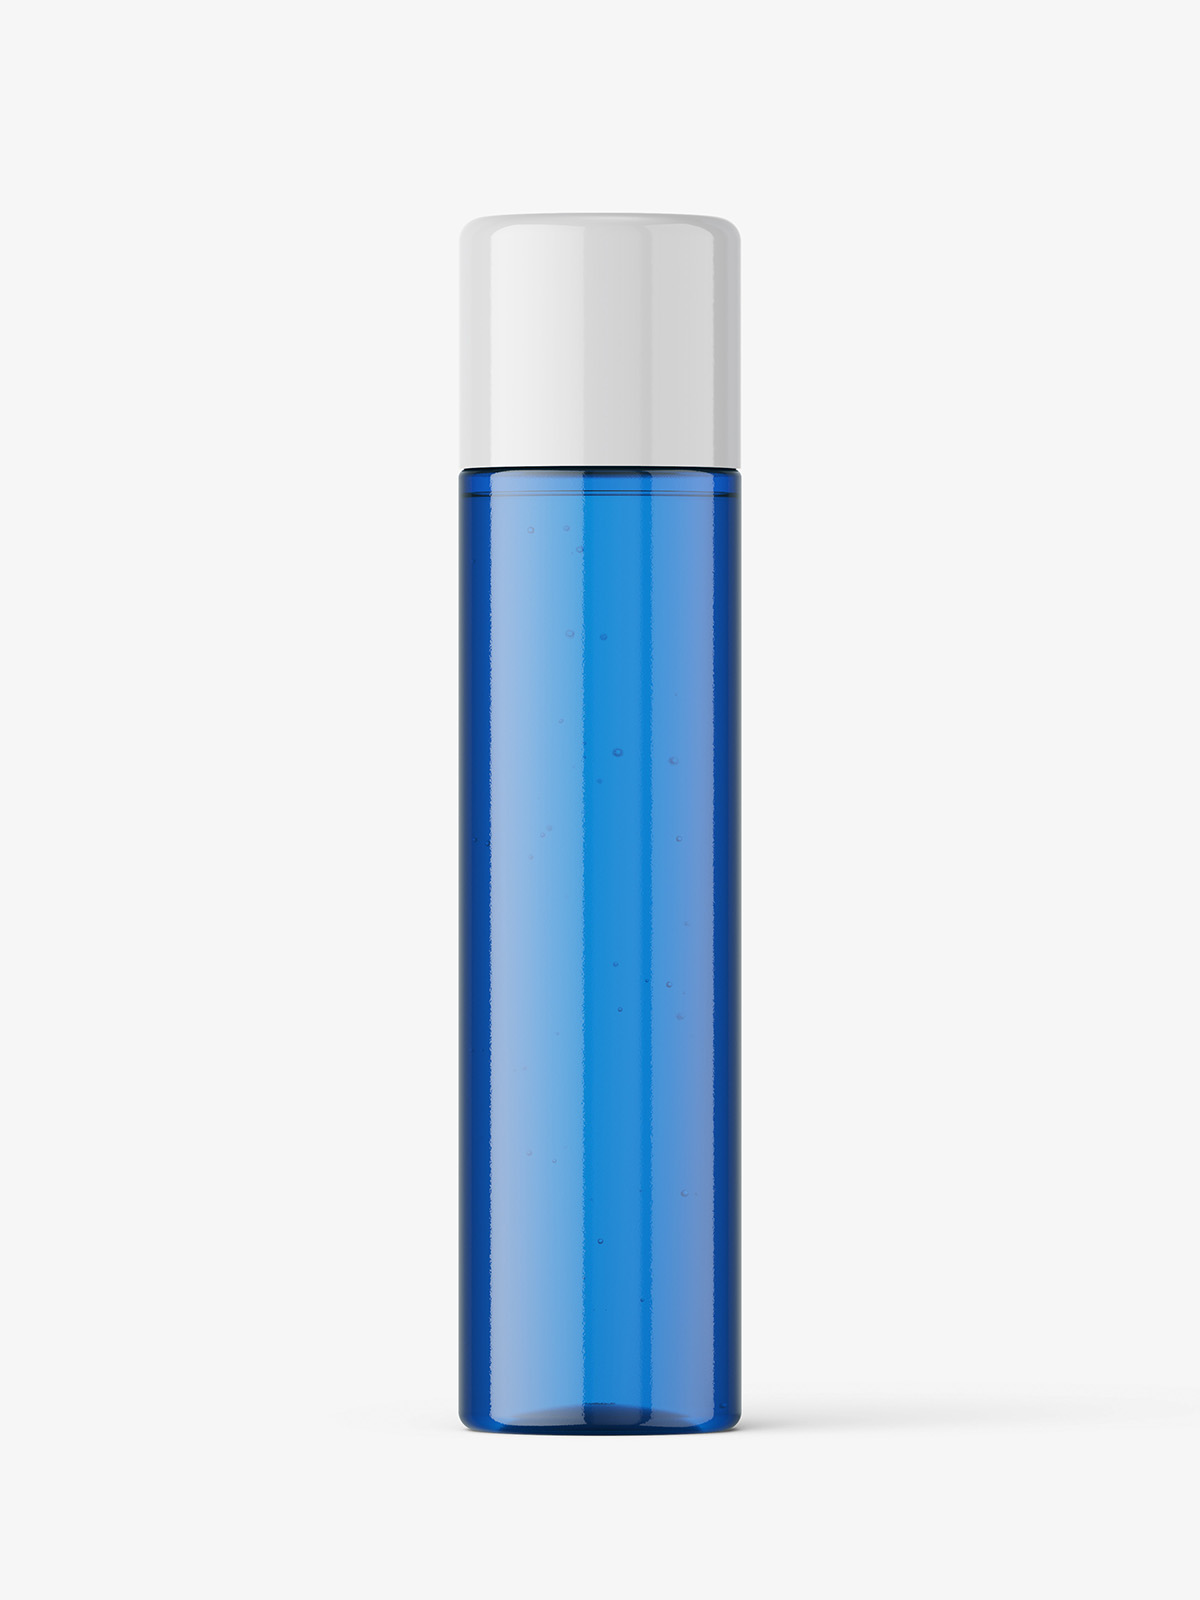 Blue bottle mockup - Smarty Mockups